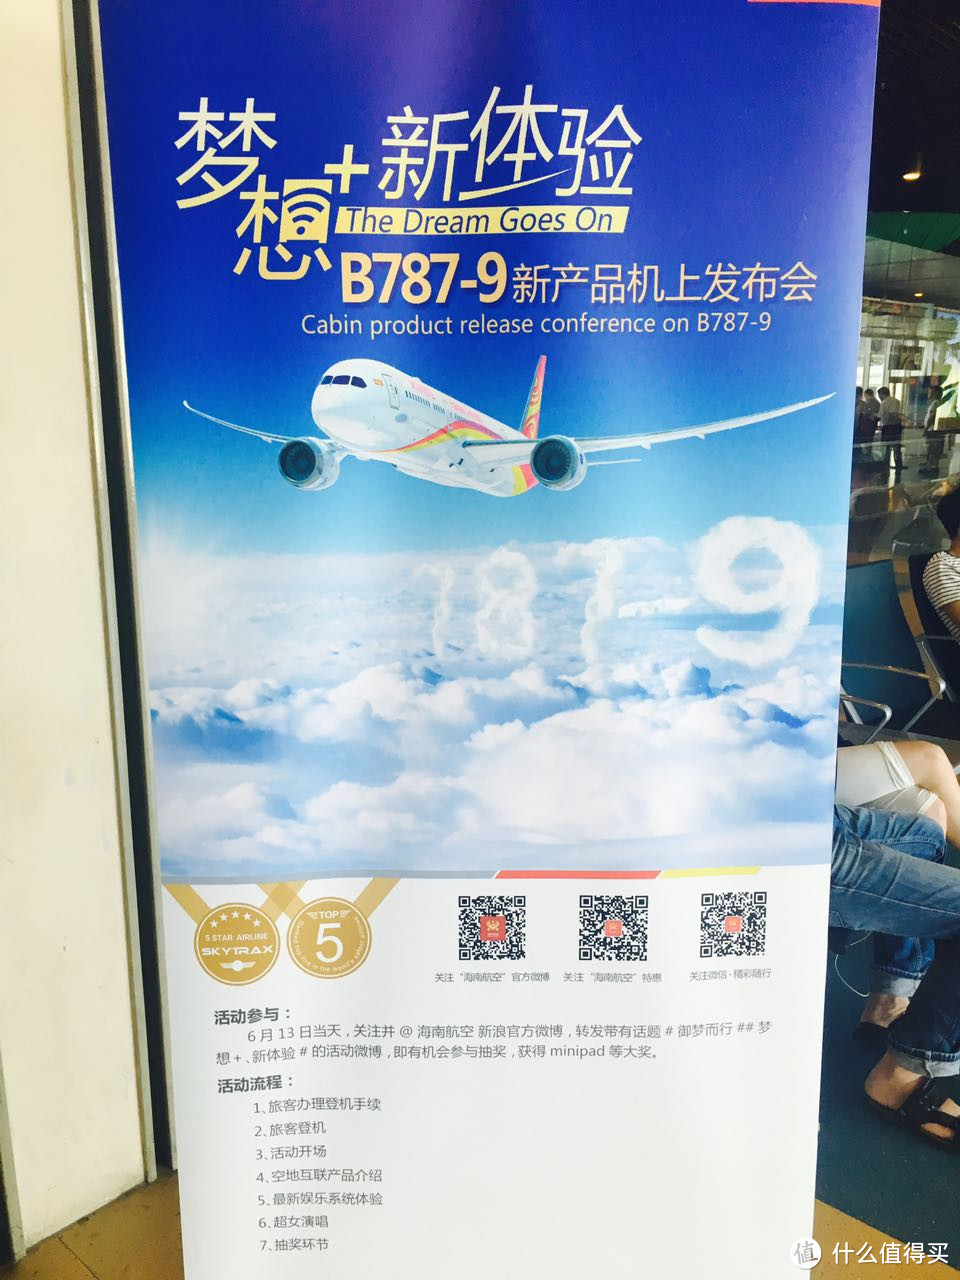 国内地空上网航班 — 海南航空 787-9 首飞 “新梦想 新体验”